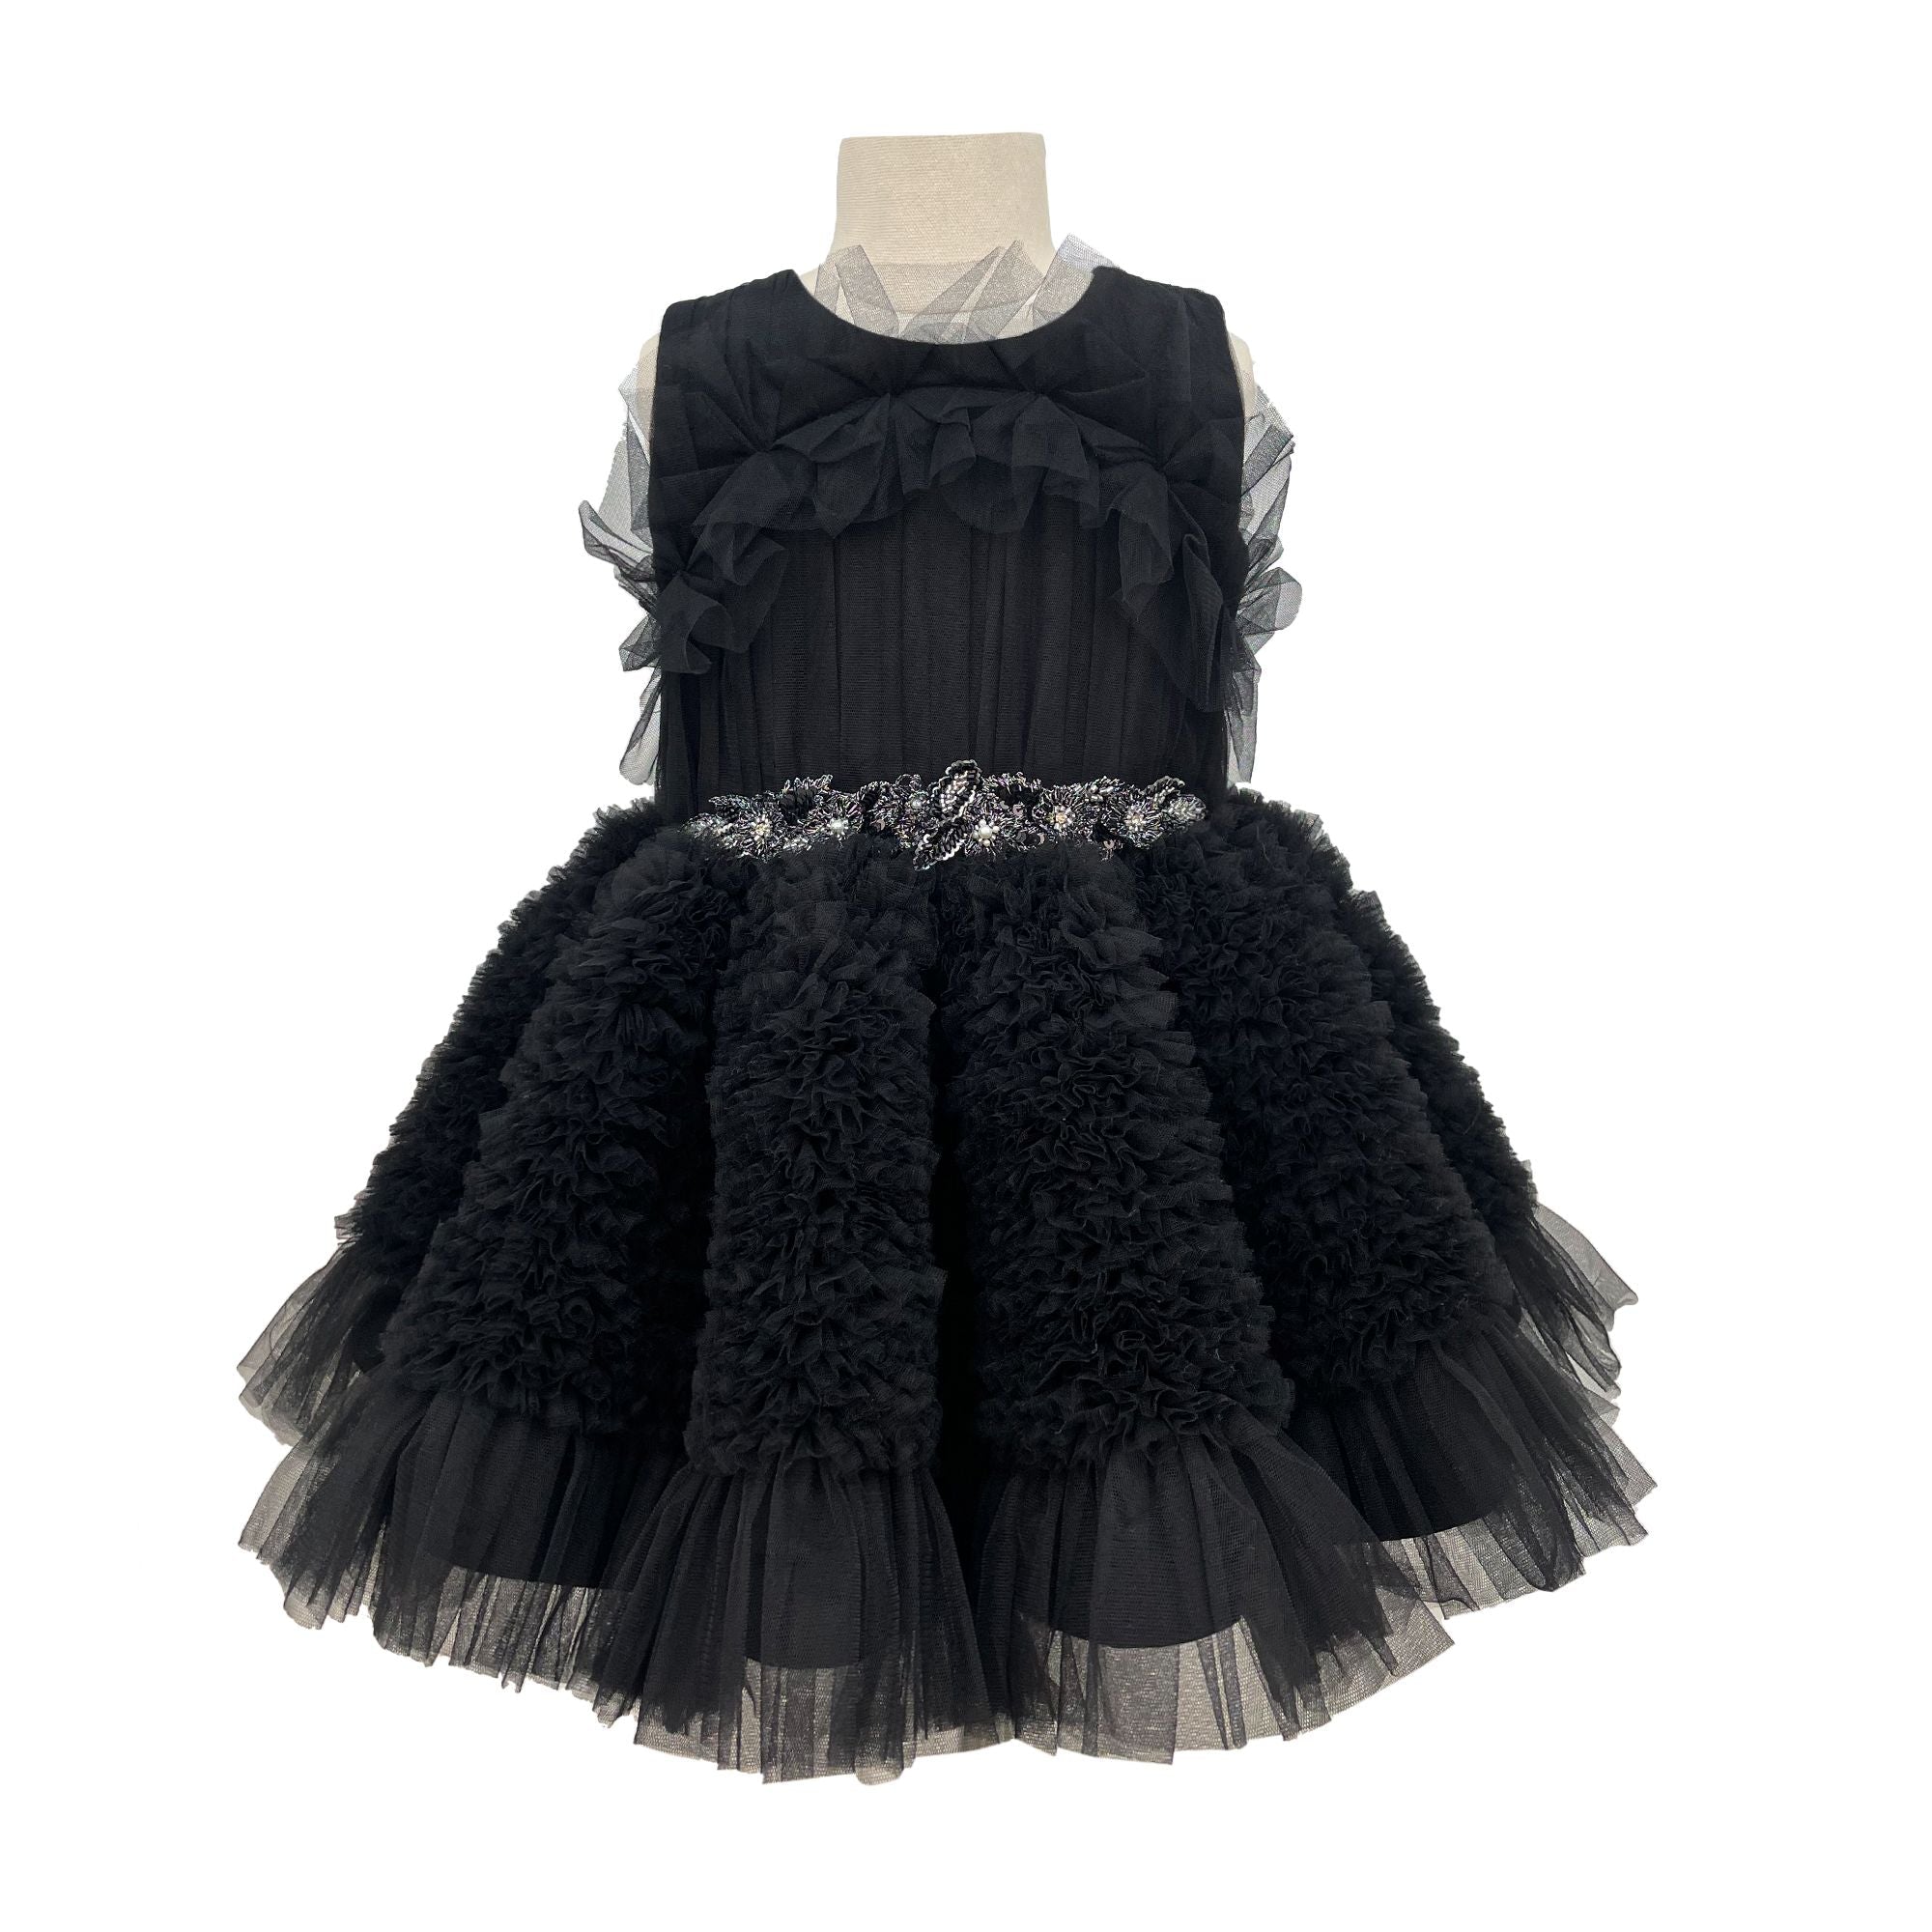 The Embellished Ariel Tulle Dress (Black)